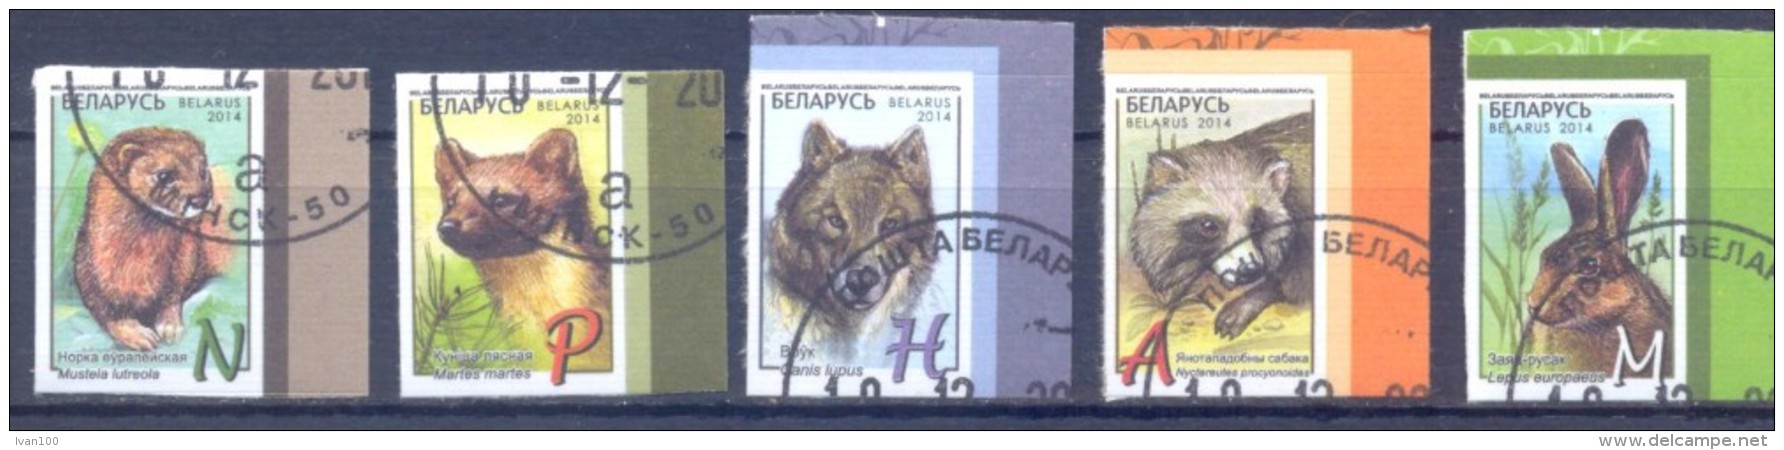 2014. Belarus,  Definitives, Animals, 5v Self-adhesive, Cancelled/O - Belarus